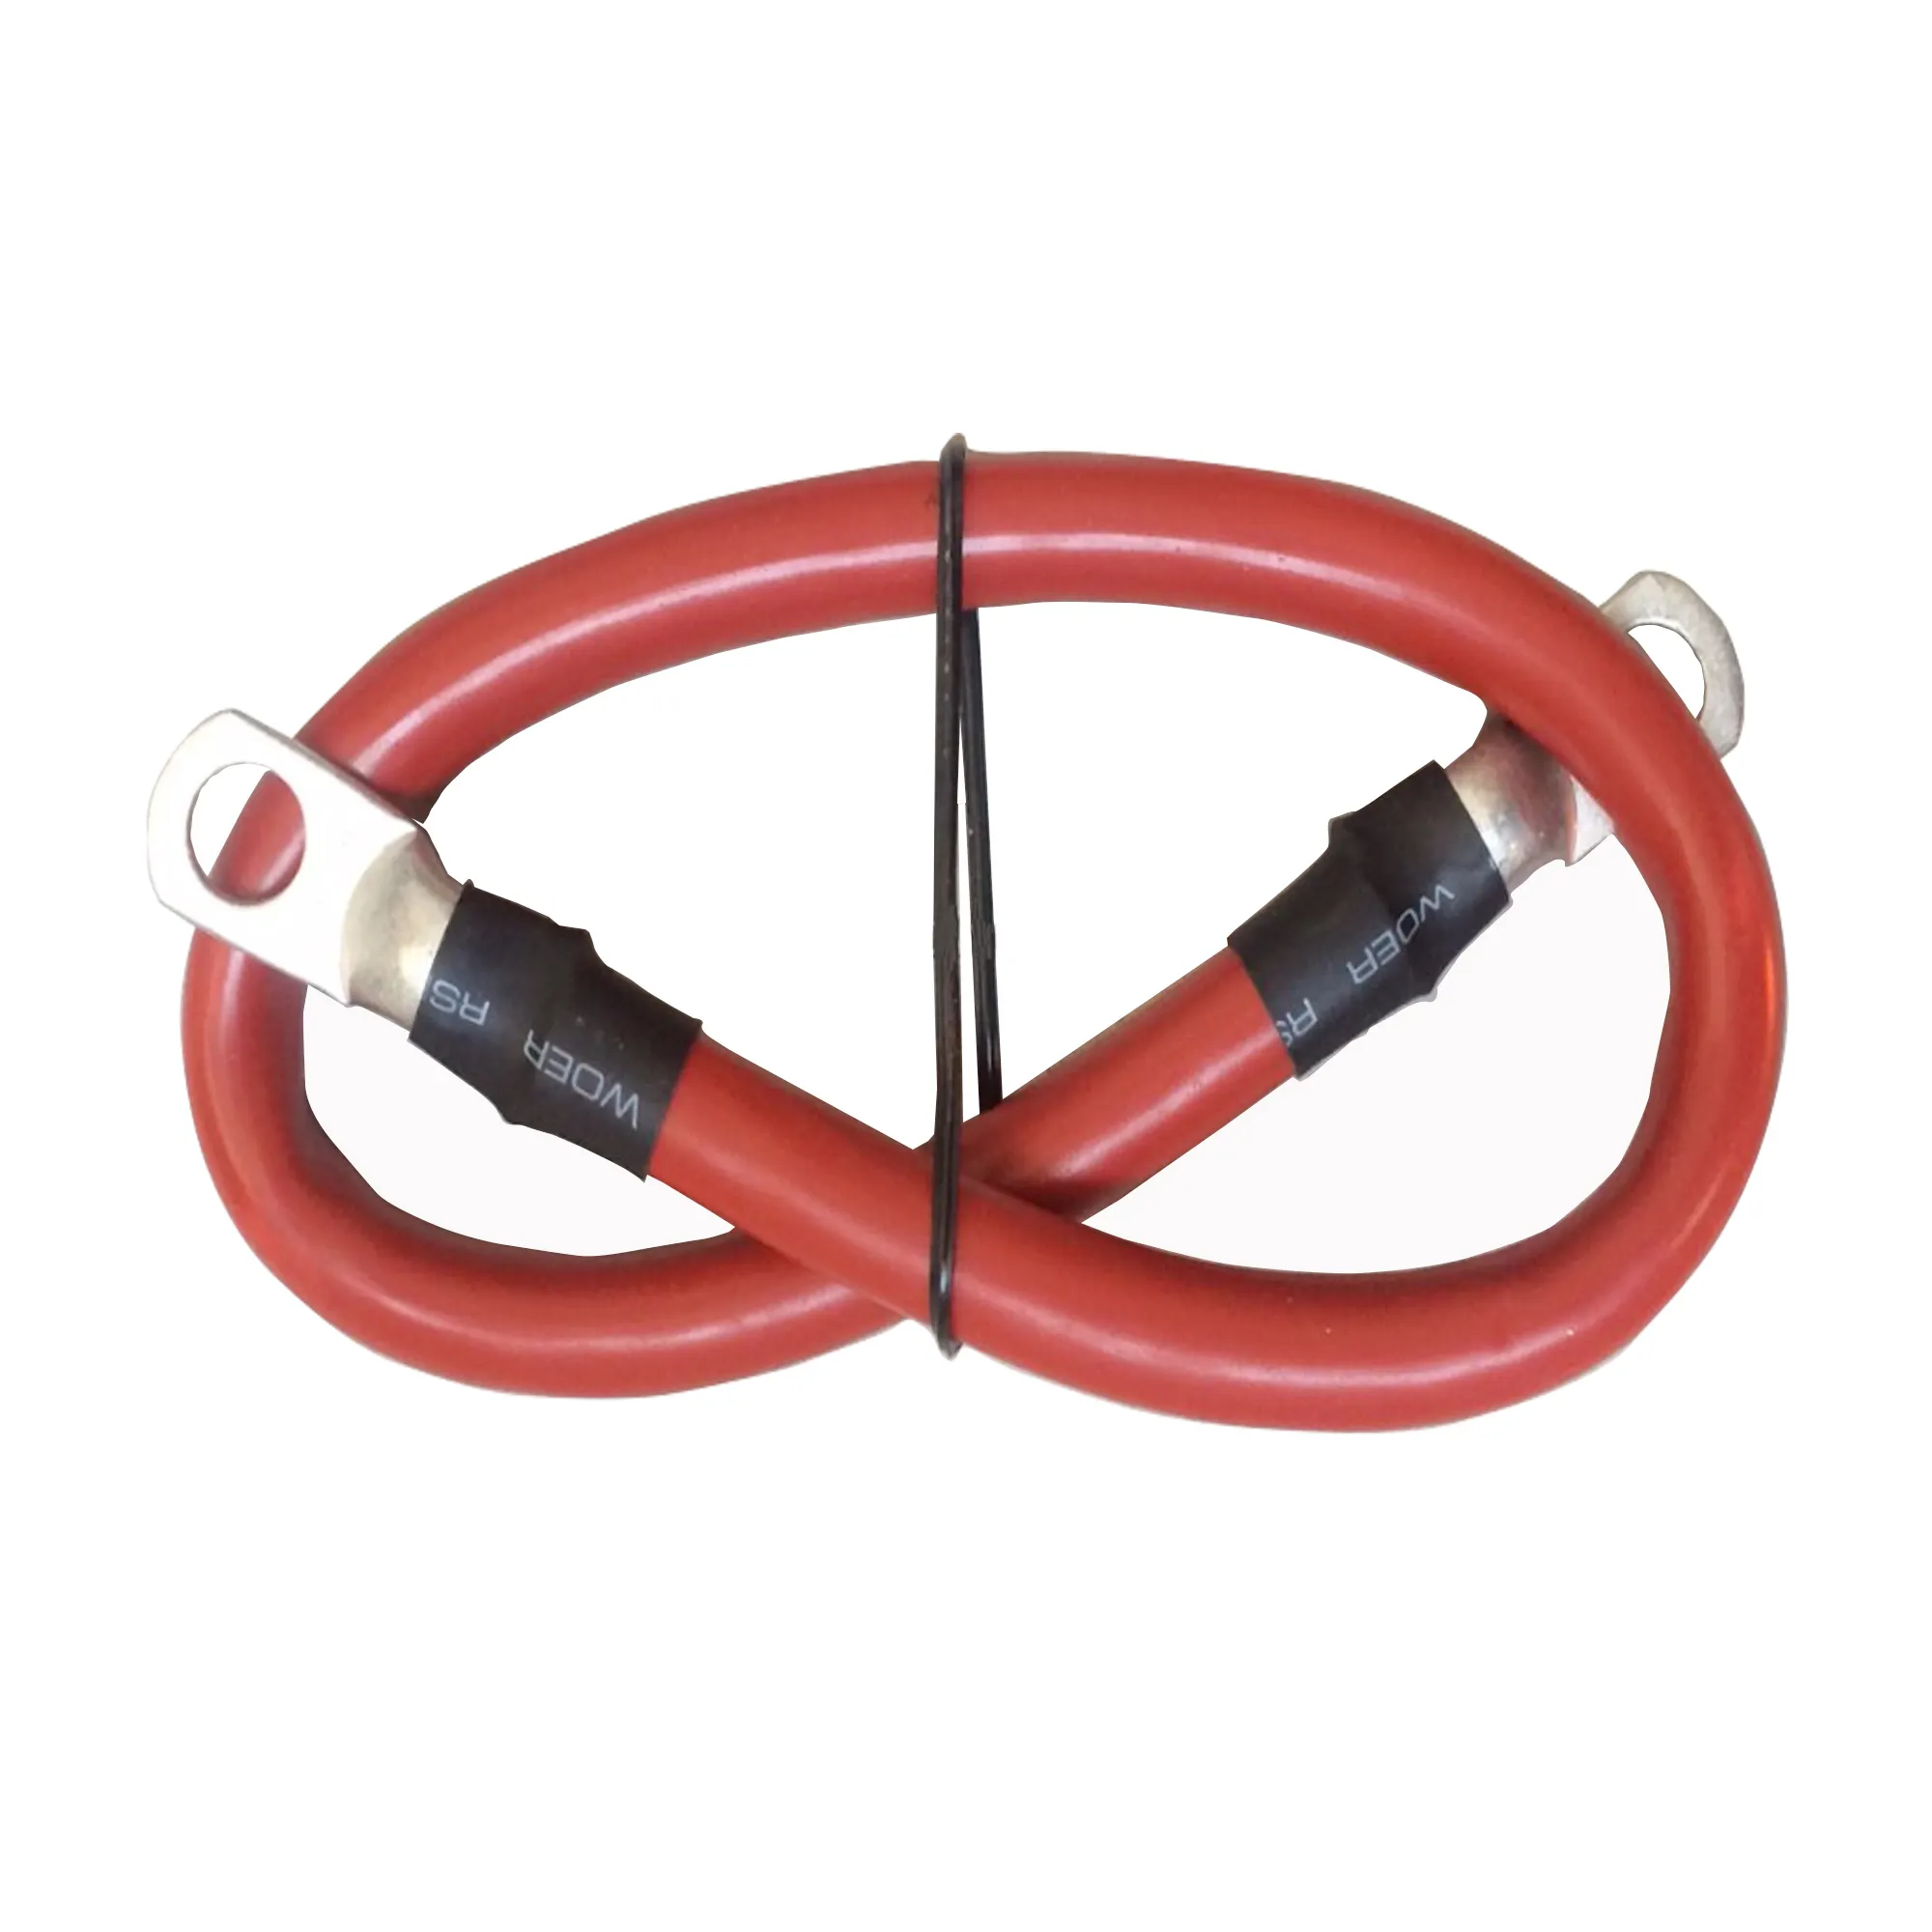 Kabel baterai laut 2-Gauge panjang 12 "kancing 3/8" dengan rakitan Lug kaleng